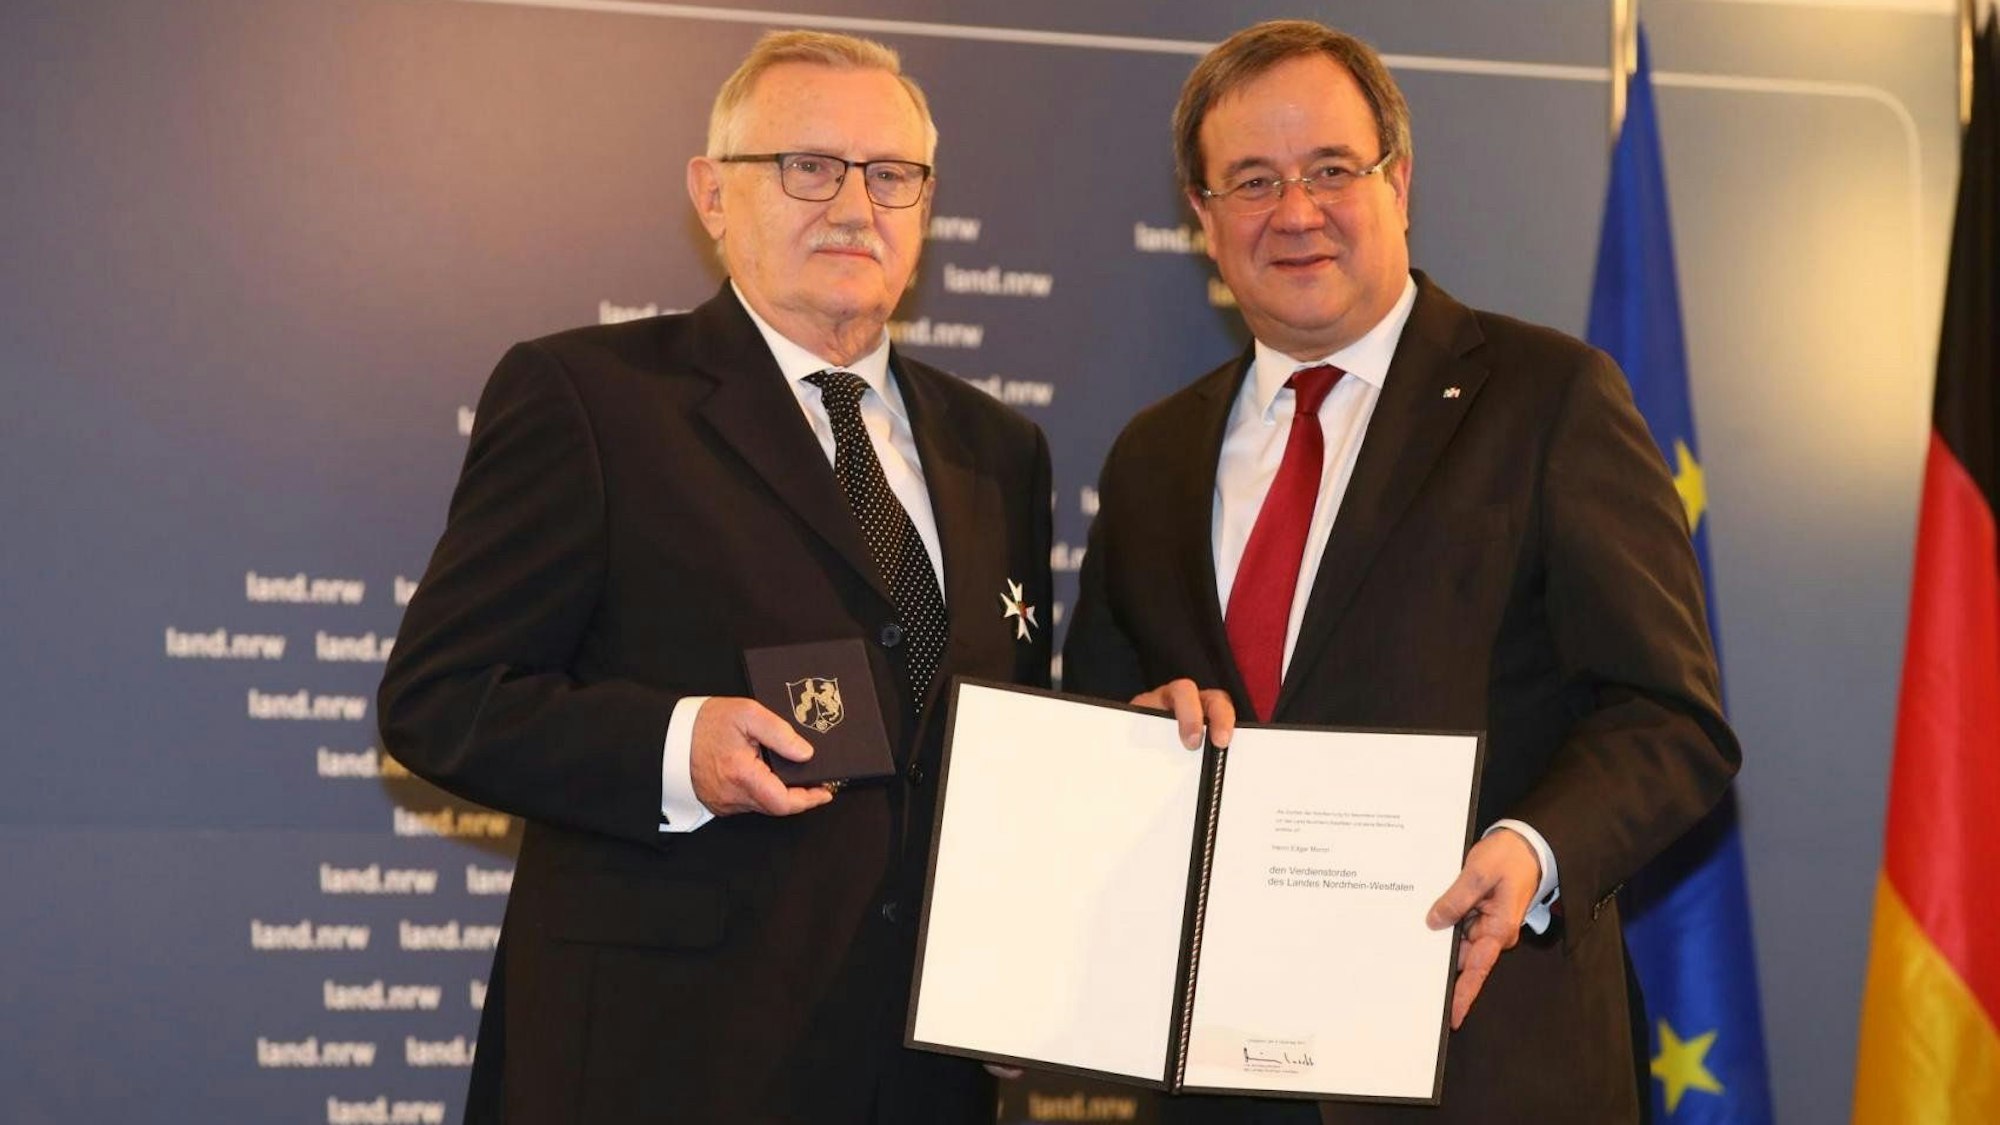 Der damalige Ministerpräsident Armin Laschet überreichte Edgar Moron 2017 den Verdienstorden des Landes NRW.